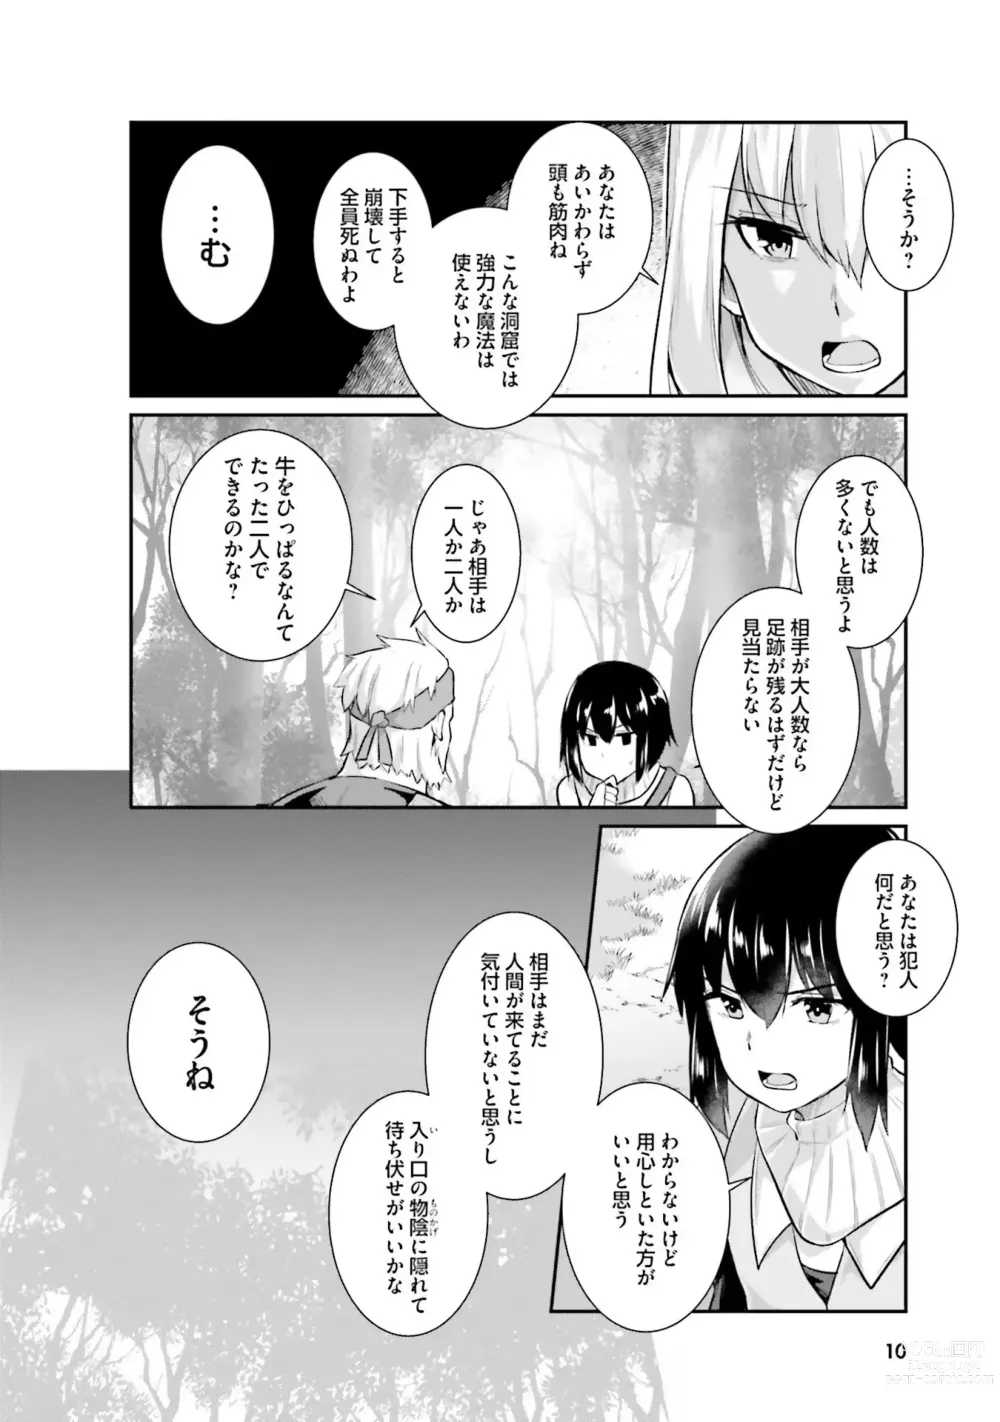 Page 12 of manga Inbi na Doukutsu no Sono Oku de